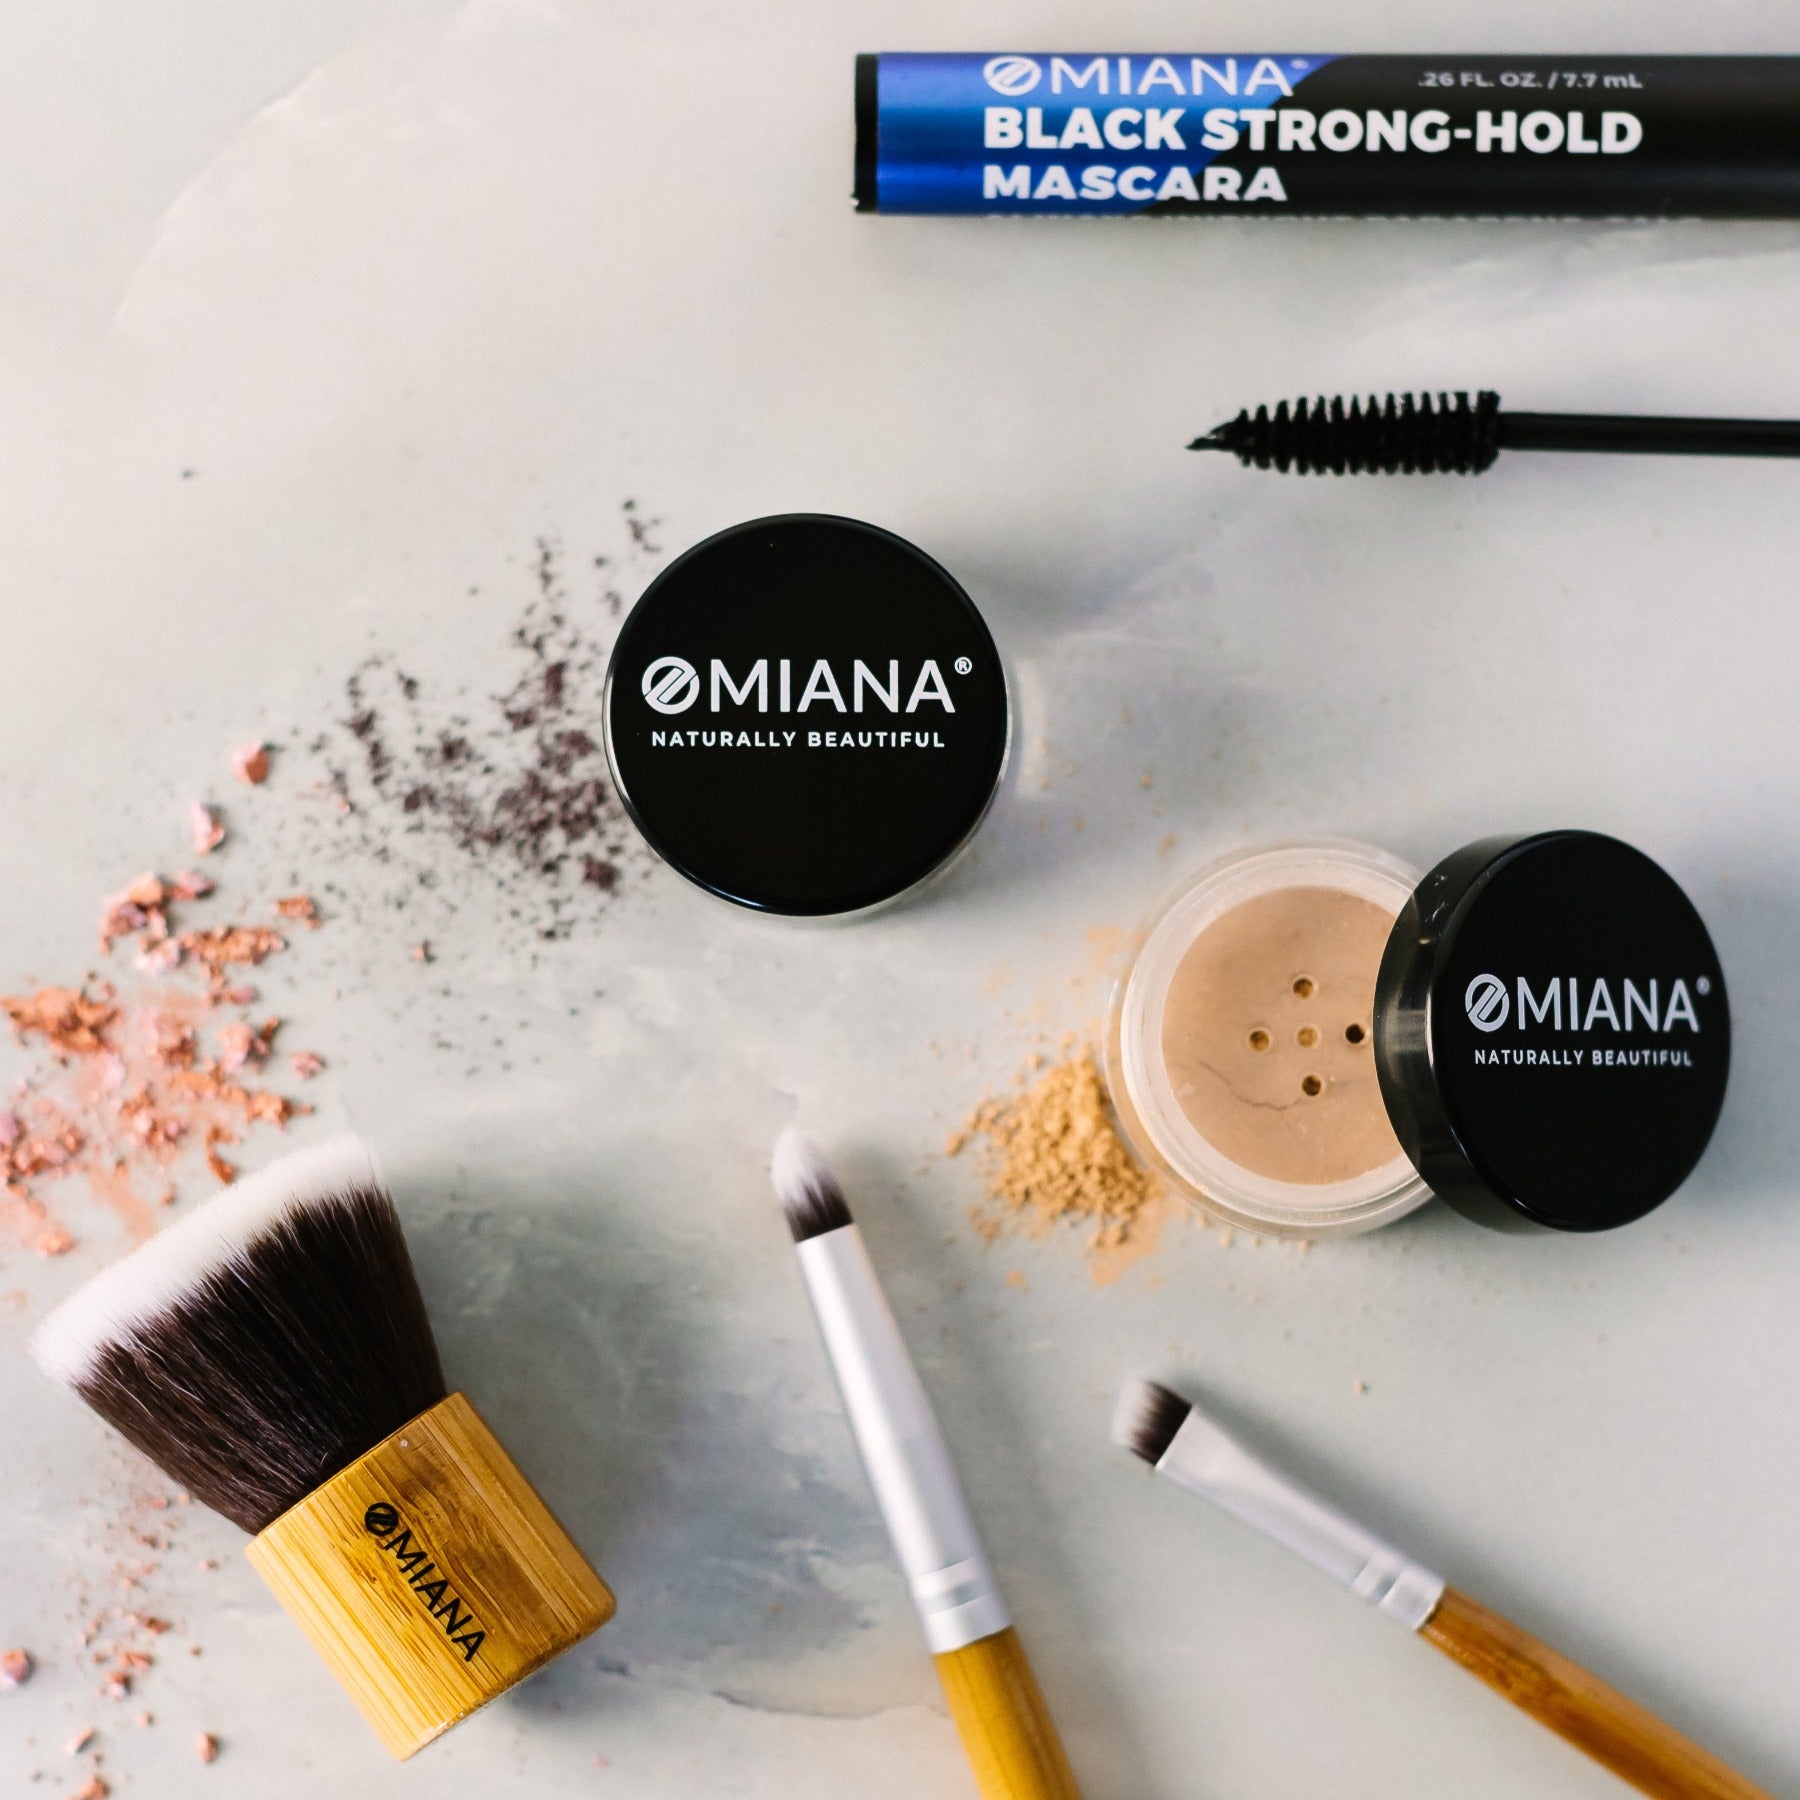 Makeup brushes for loose powder eyeshadow